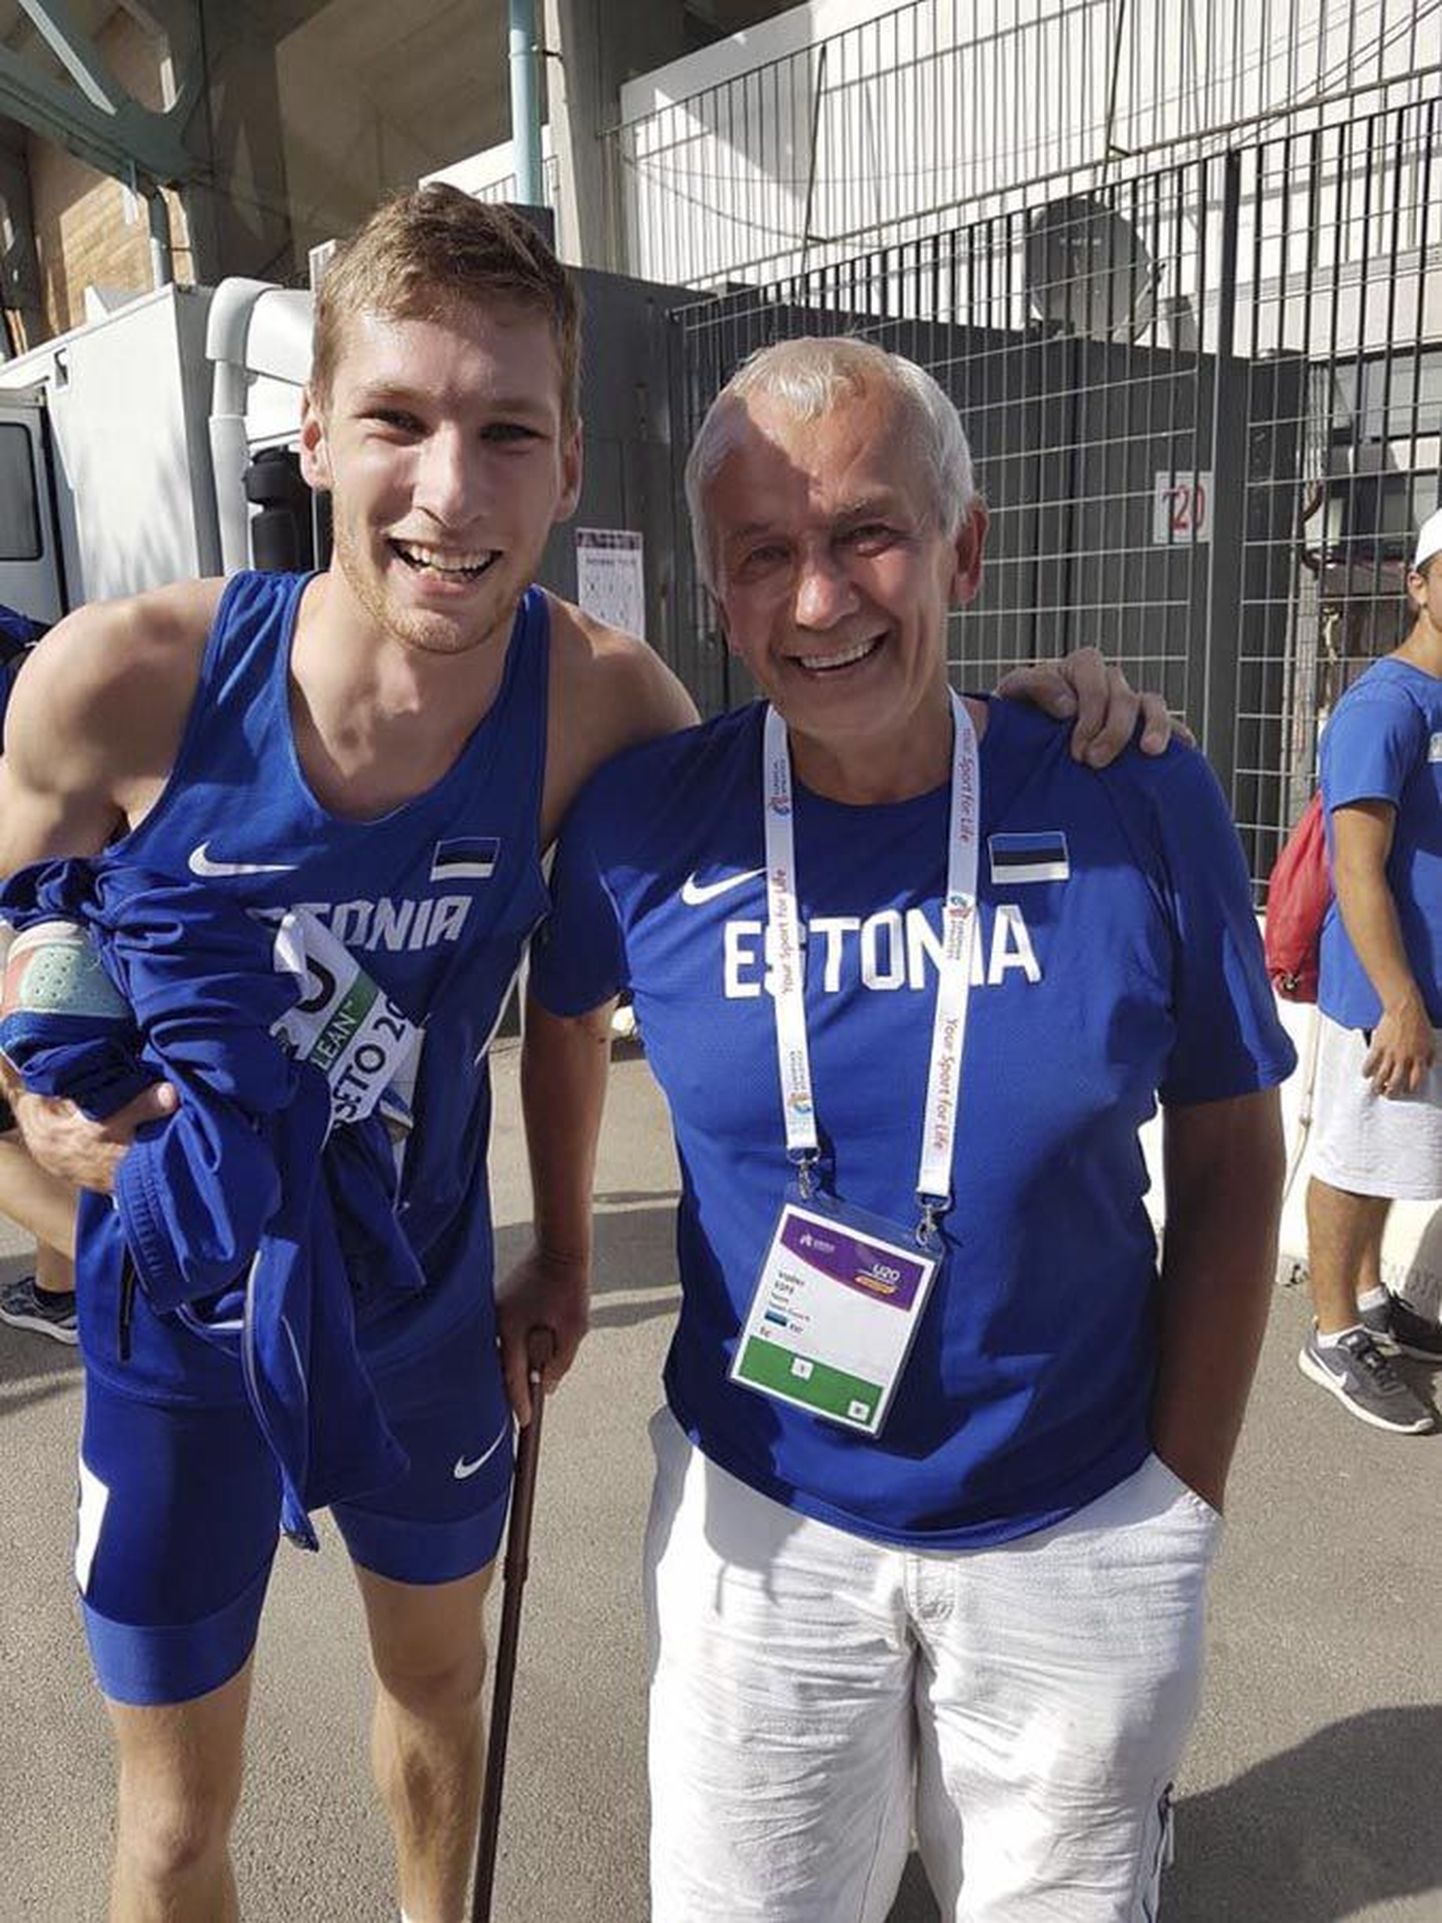 Viljandlane Tony Nõu on koos oma treeneri Valter Espega teinud väga tublit tööd. Itaalias lõppenud U-20 vanuseklassi Euroopa meistrivõistlustel värskendas sportlane 400 meetri jooksus kolmel korral Eesti juunioride rekordit ning teenis tiitlivõistlustel kõrge neljanda koha.